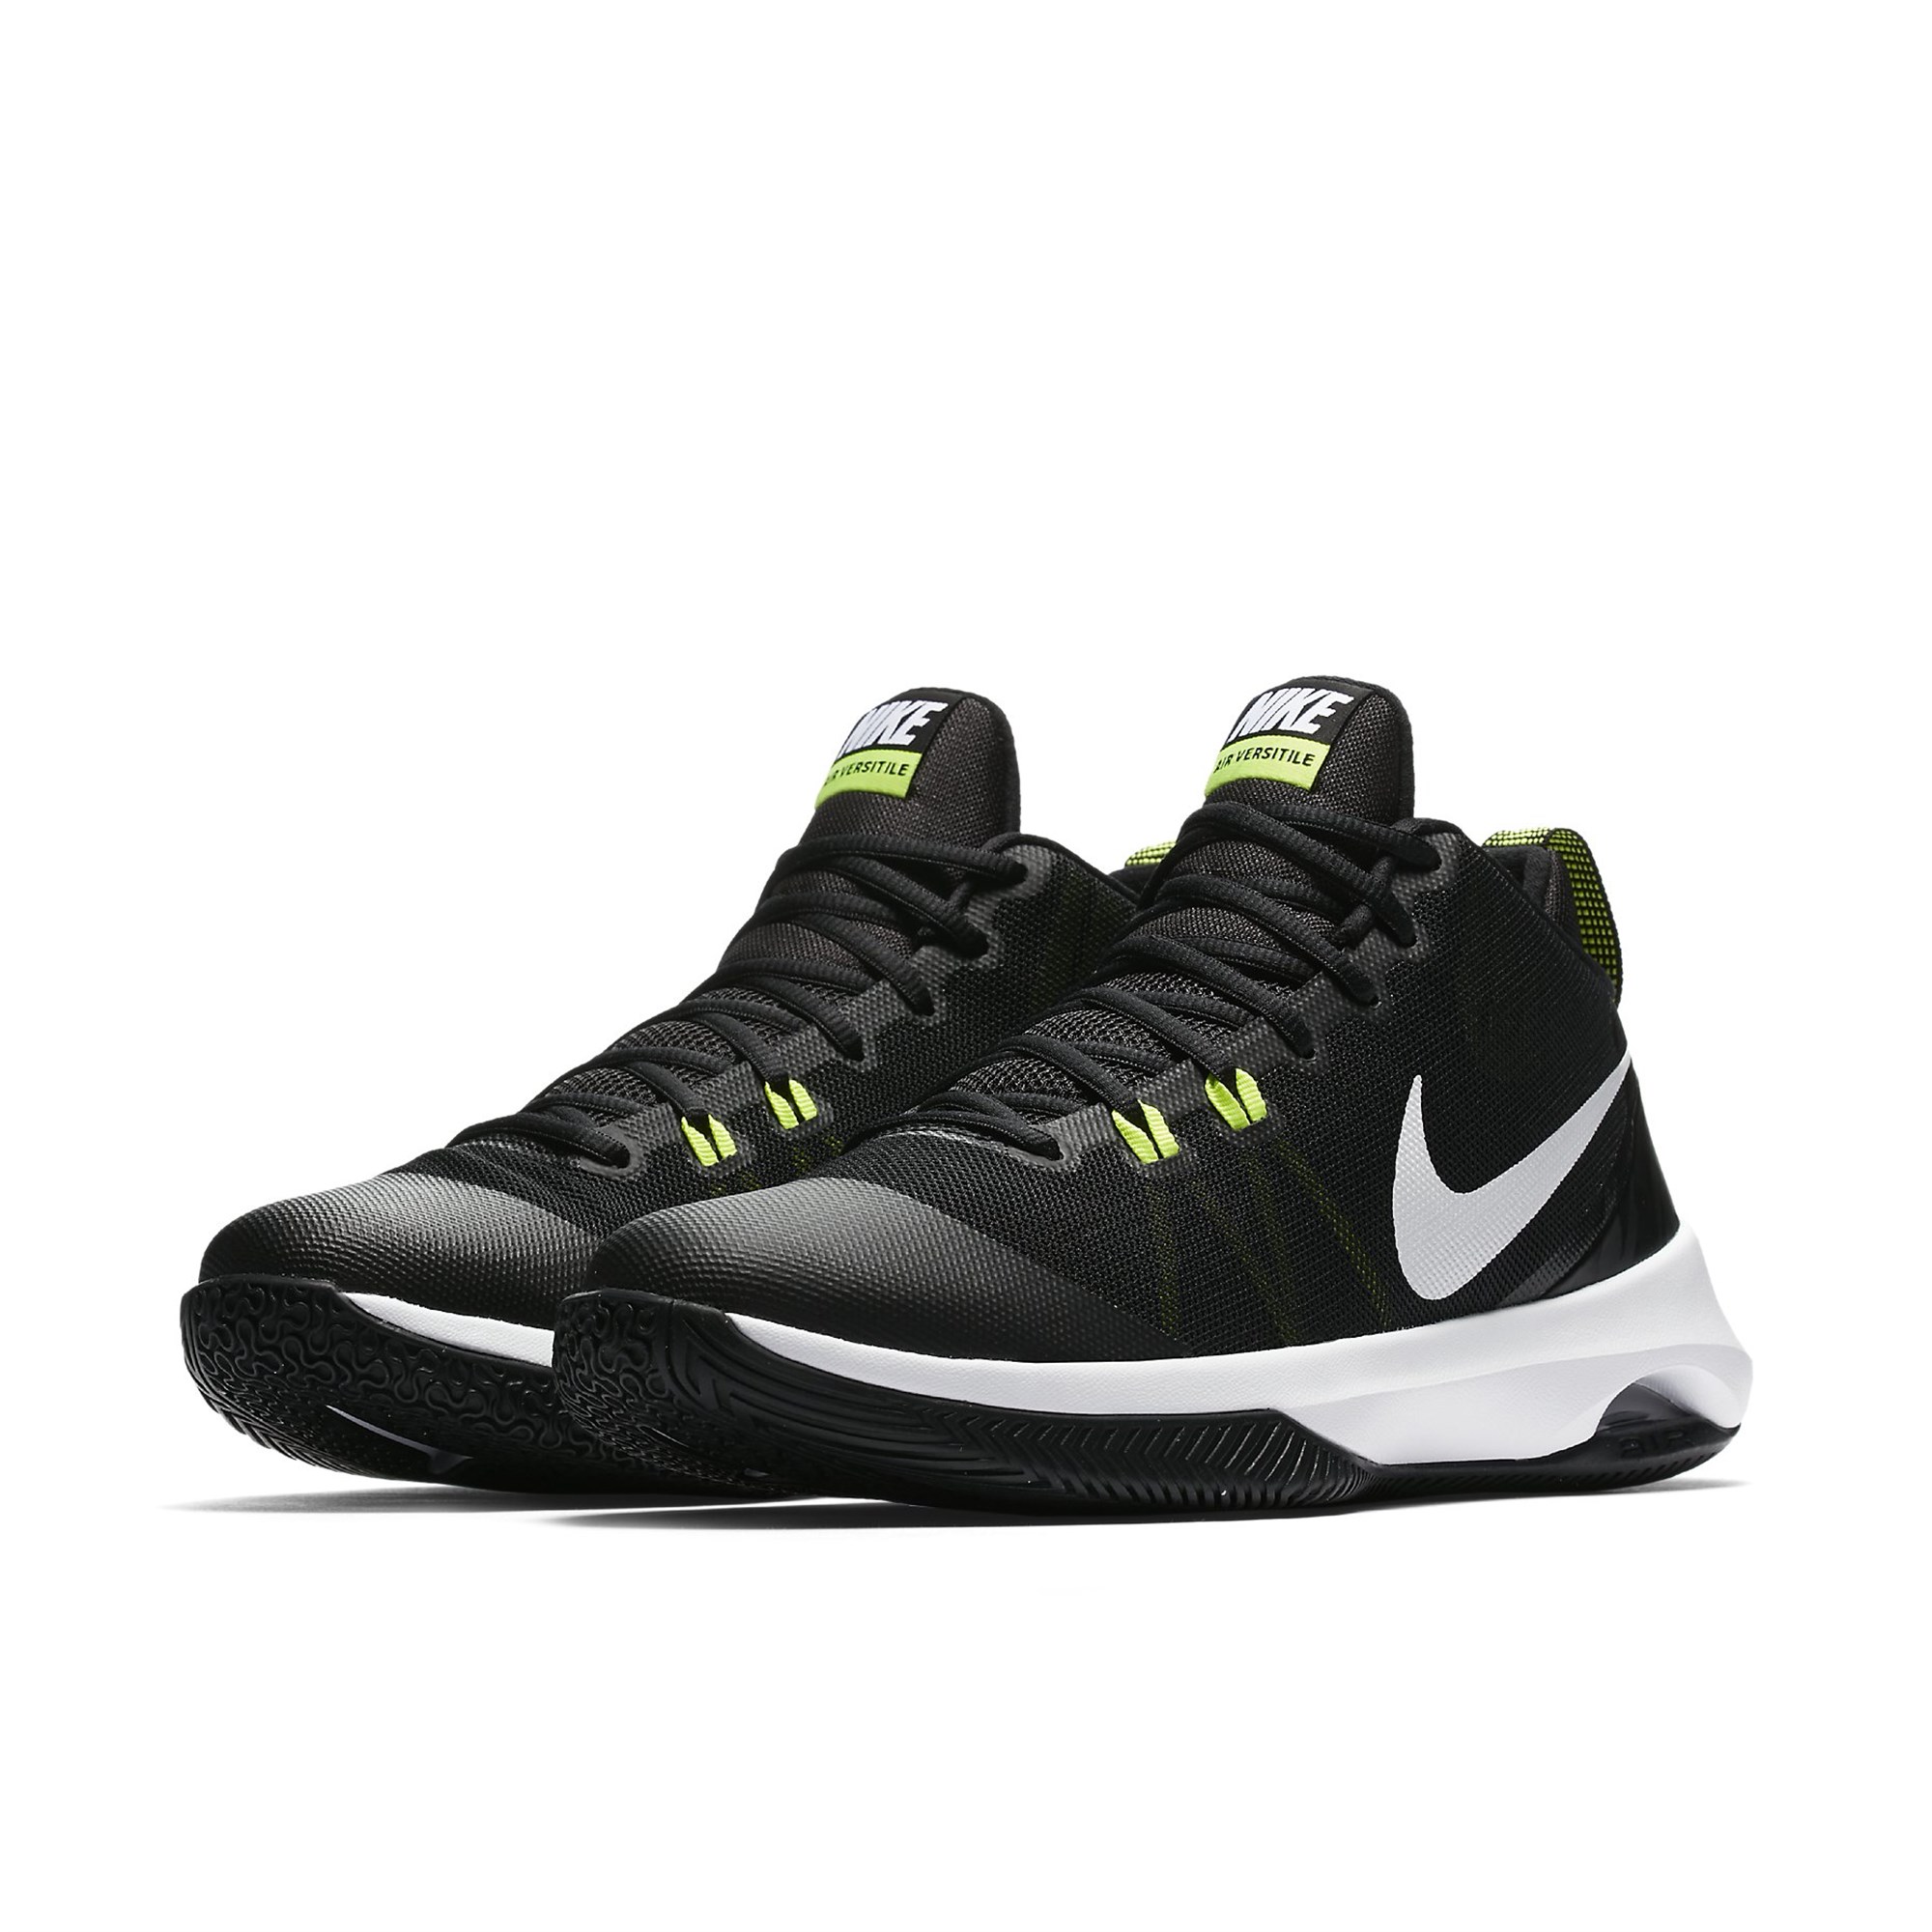 Nike Air Versitile Erkek Basketbol Ayakkabı Ürün kodu: 852431-009 | Etichet  Sport